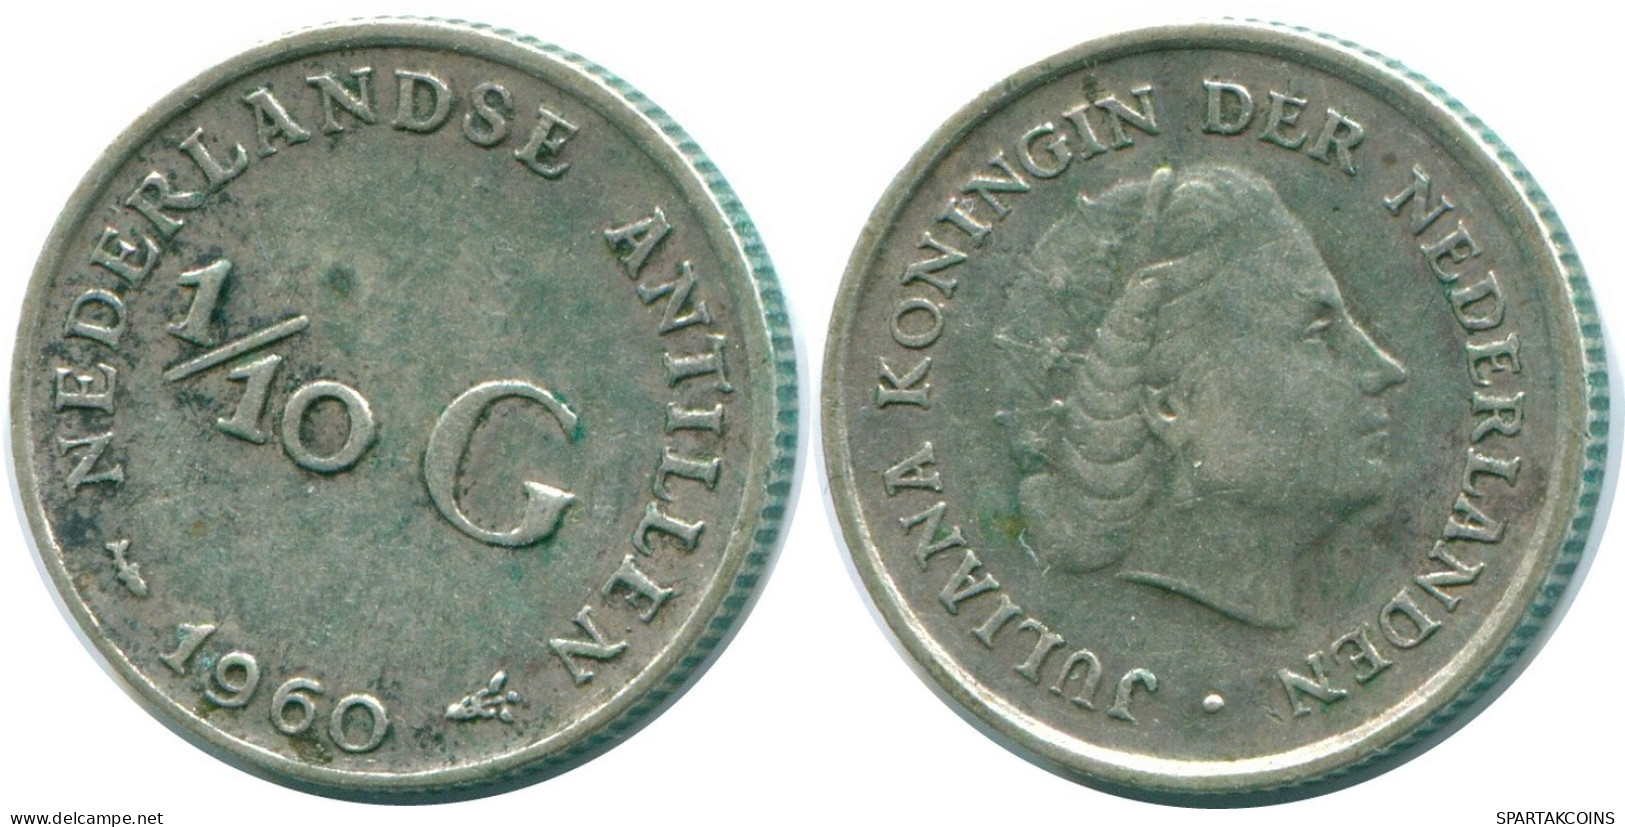 1/10 GULDEN 1960 NIEDERLÄNDISCHE ANTILLEN SILBER Koloniale Münze #NL12339.3.D.A - Antilles Néerlandaises